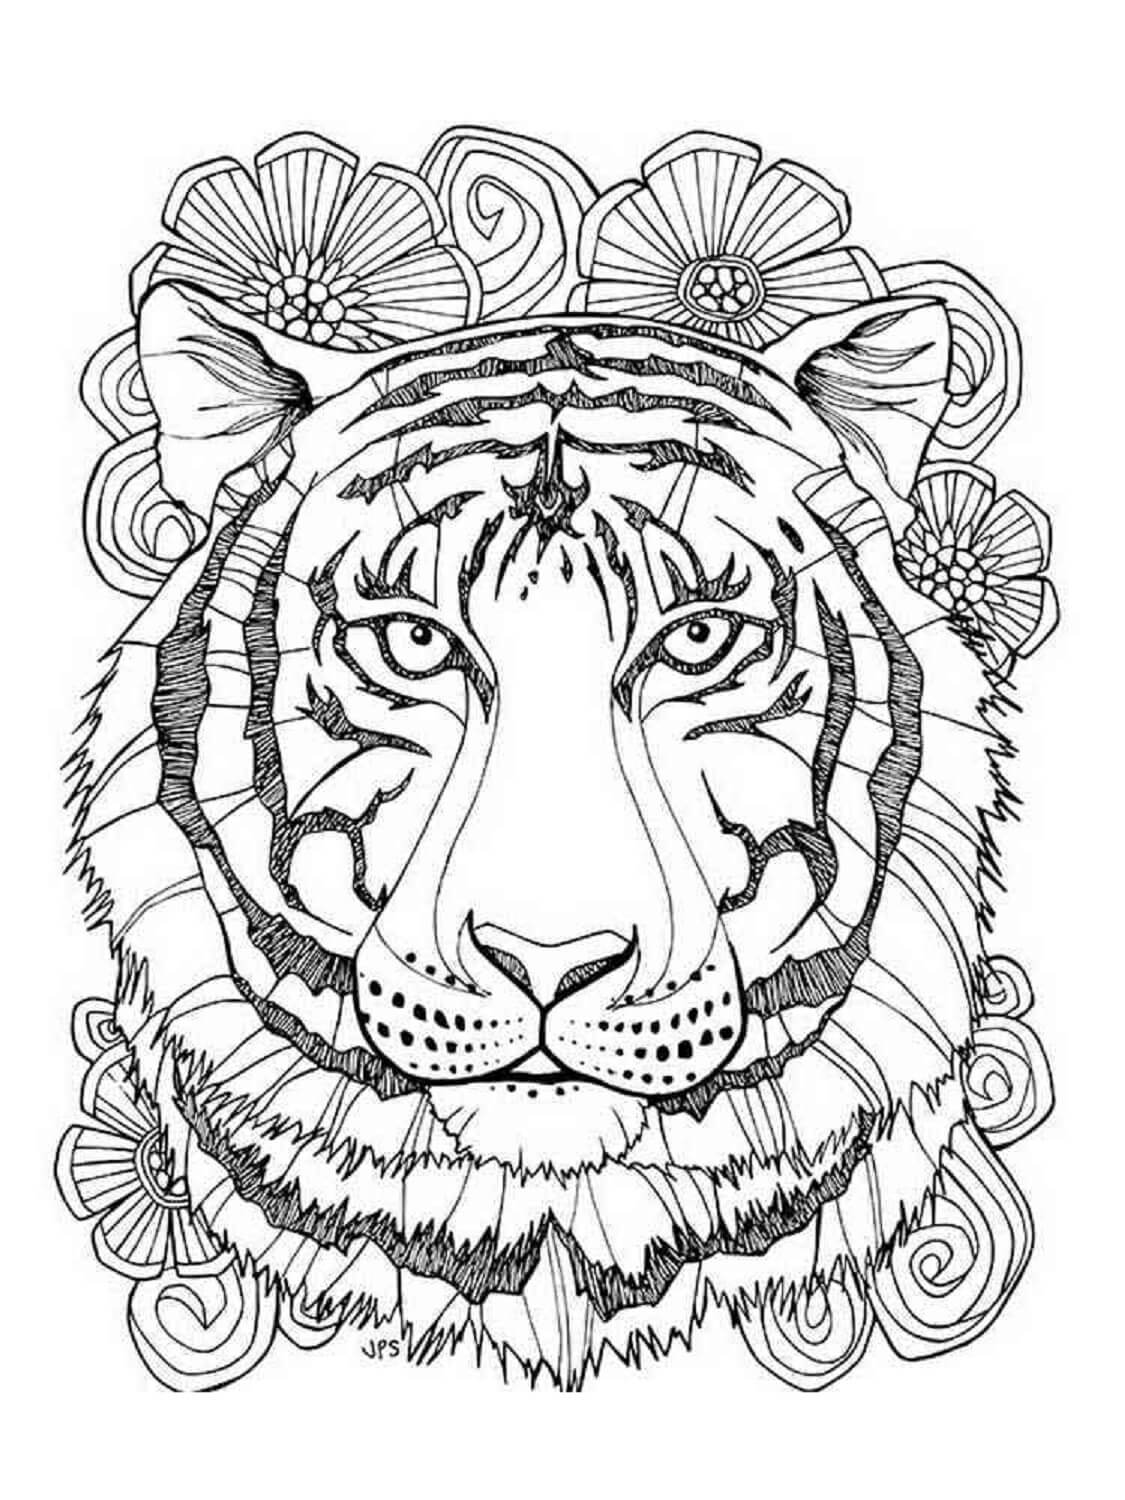 Mandala Tiger Coloring Page - Sheet 8 Mandalas